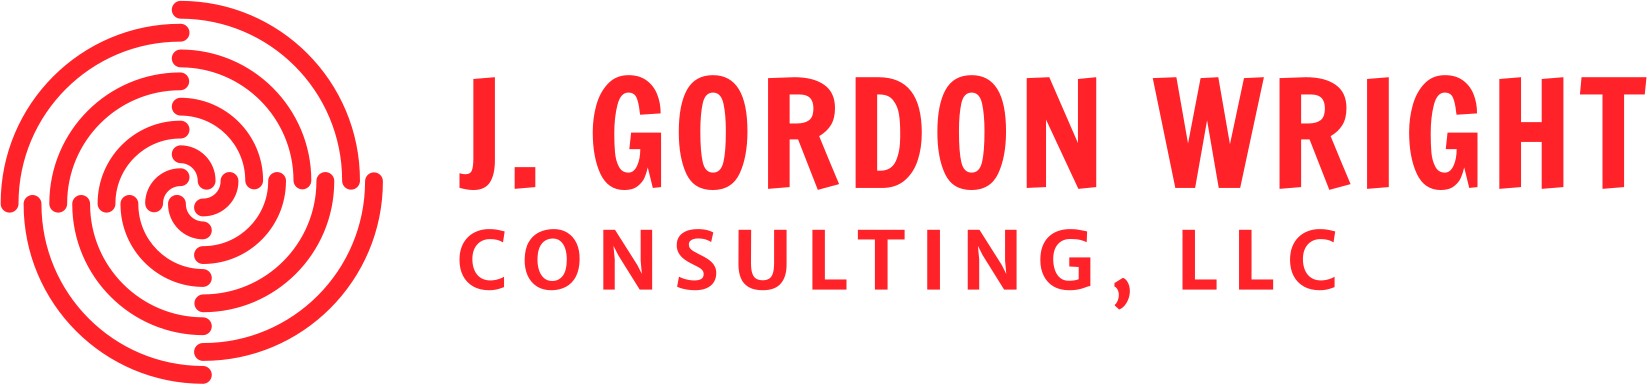 J. Gordon Wright Consulting, LLC